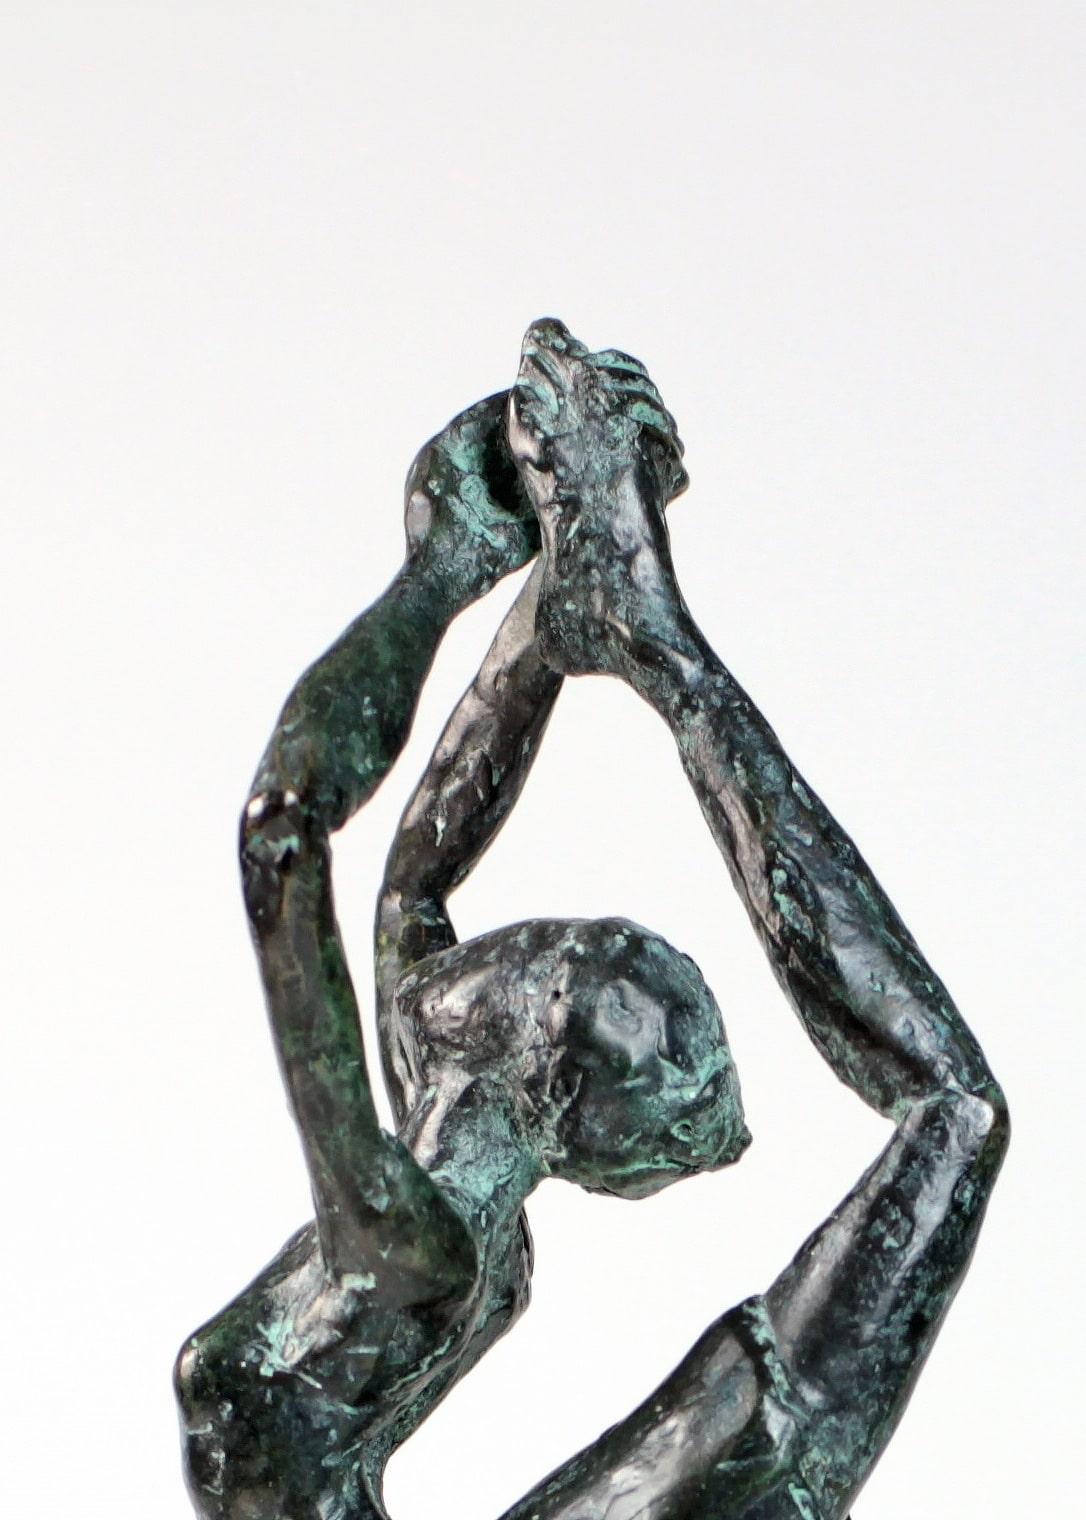 Danseuse Rassemblée ist eine Bronzeskulptur des zeitgenössischen französischen Künstlers Yann Guillon.
Maße der Bronzeskulptur: 25 x 10 x 5 cm. Höhe mit dem Plexiglasboden: 35 cm
Yann Guillon konzentriert sich in seinem Werk auf den menschlichen